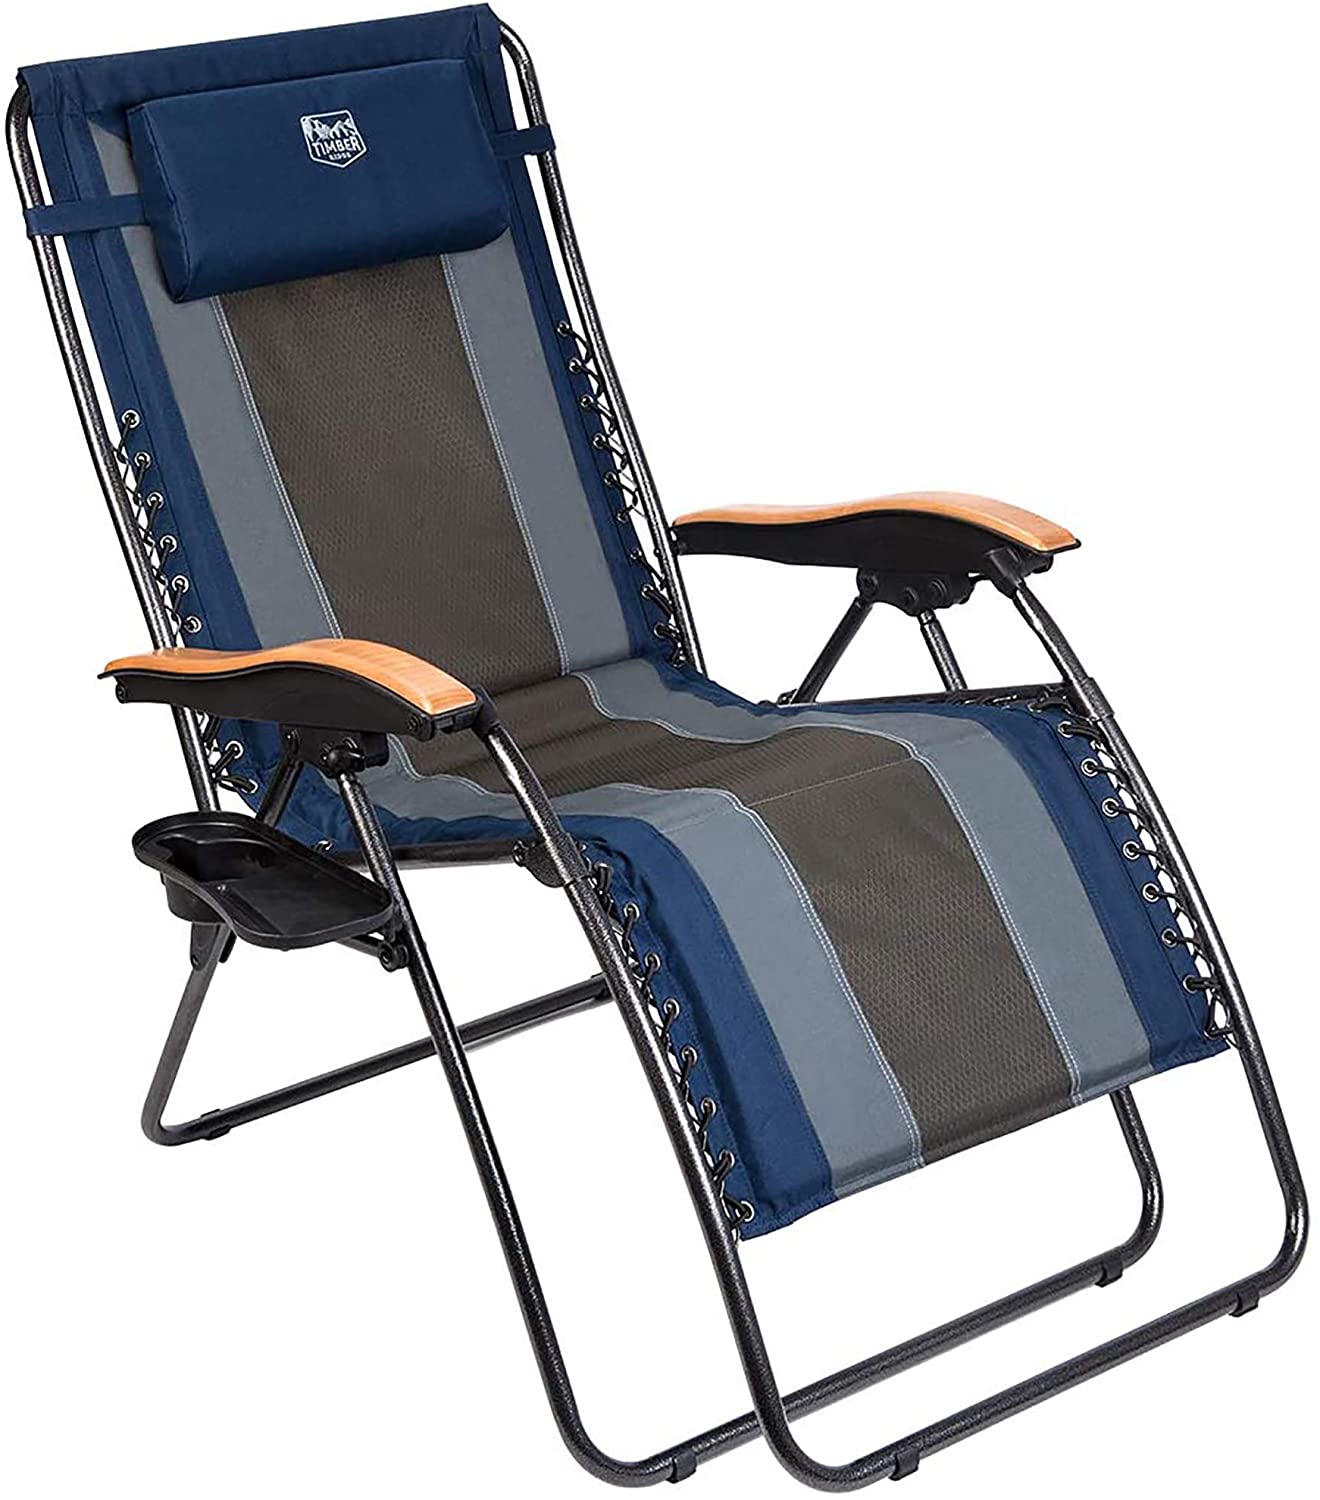 3.Timber Ridge Zero Gravity Chair 